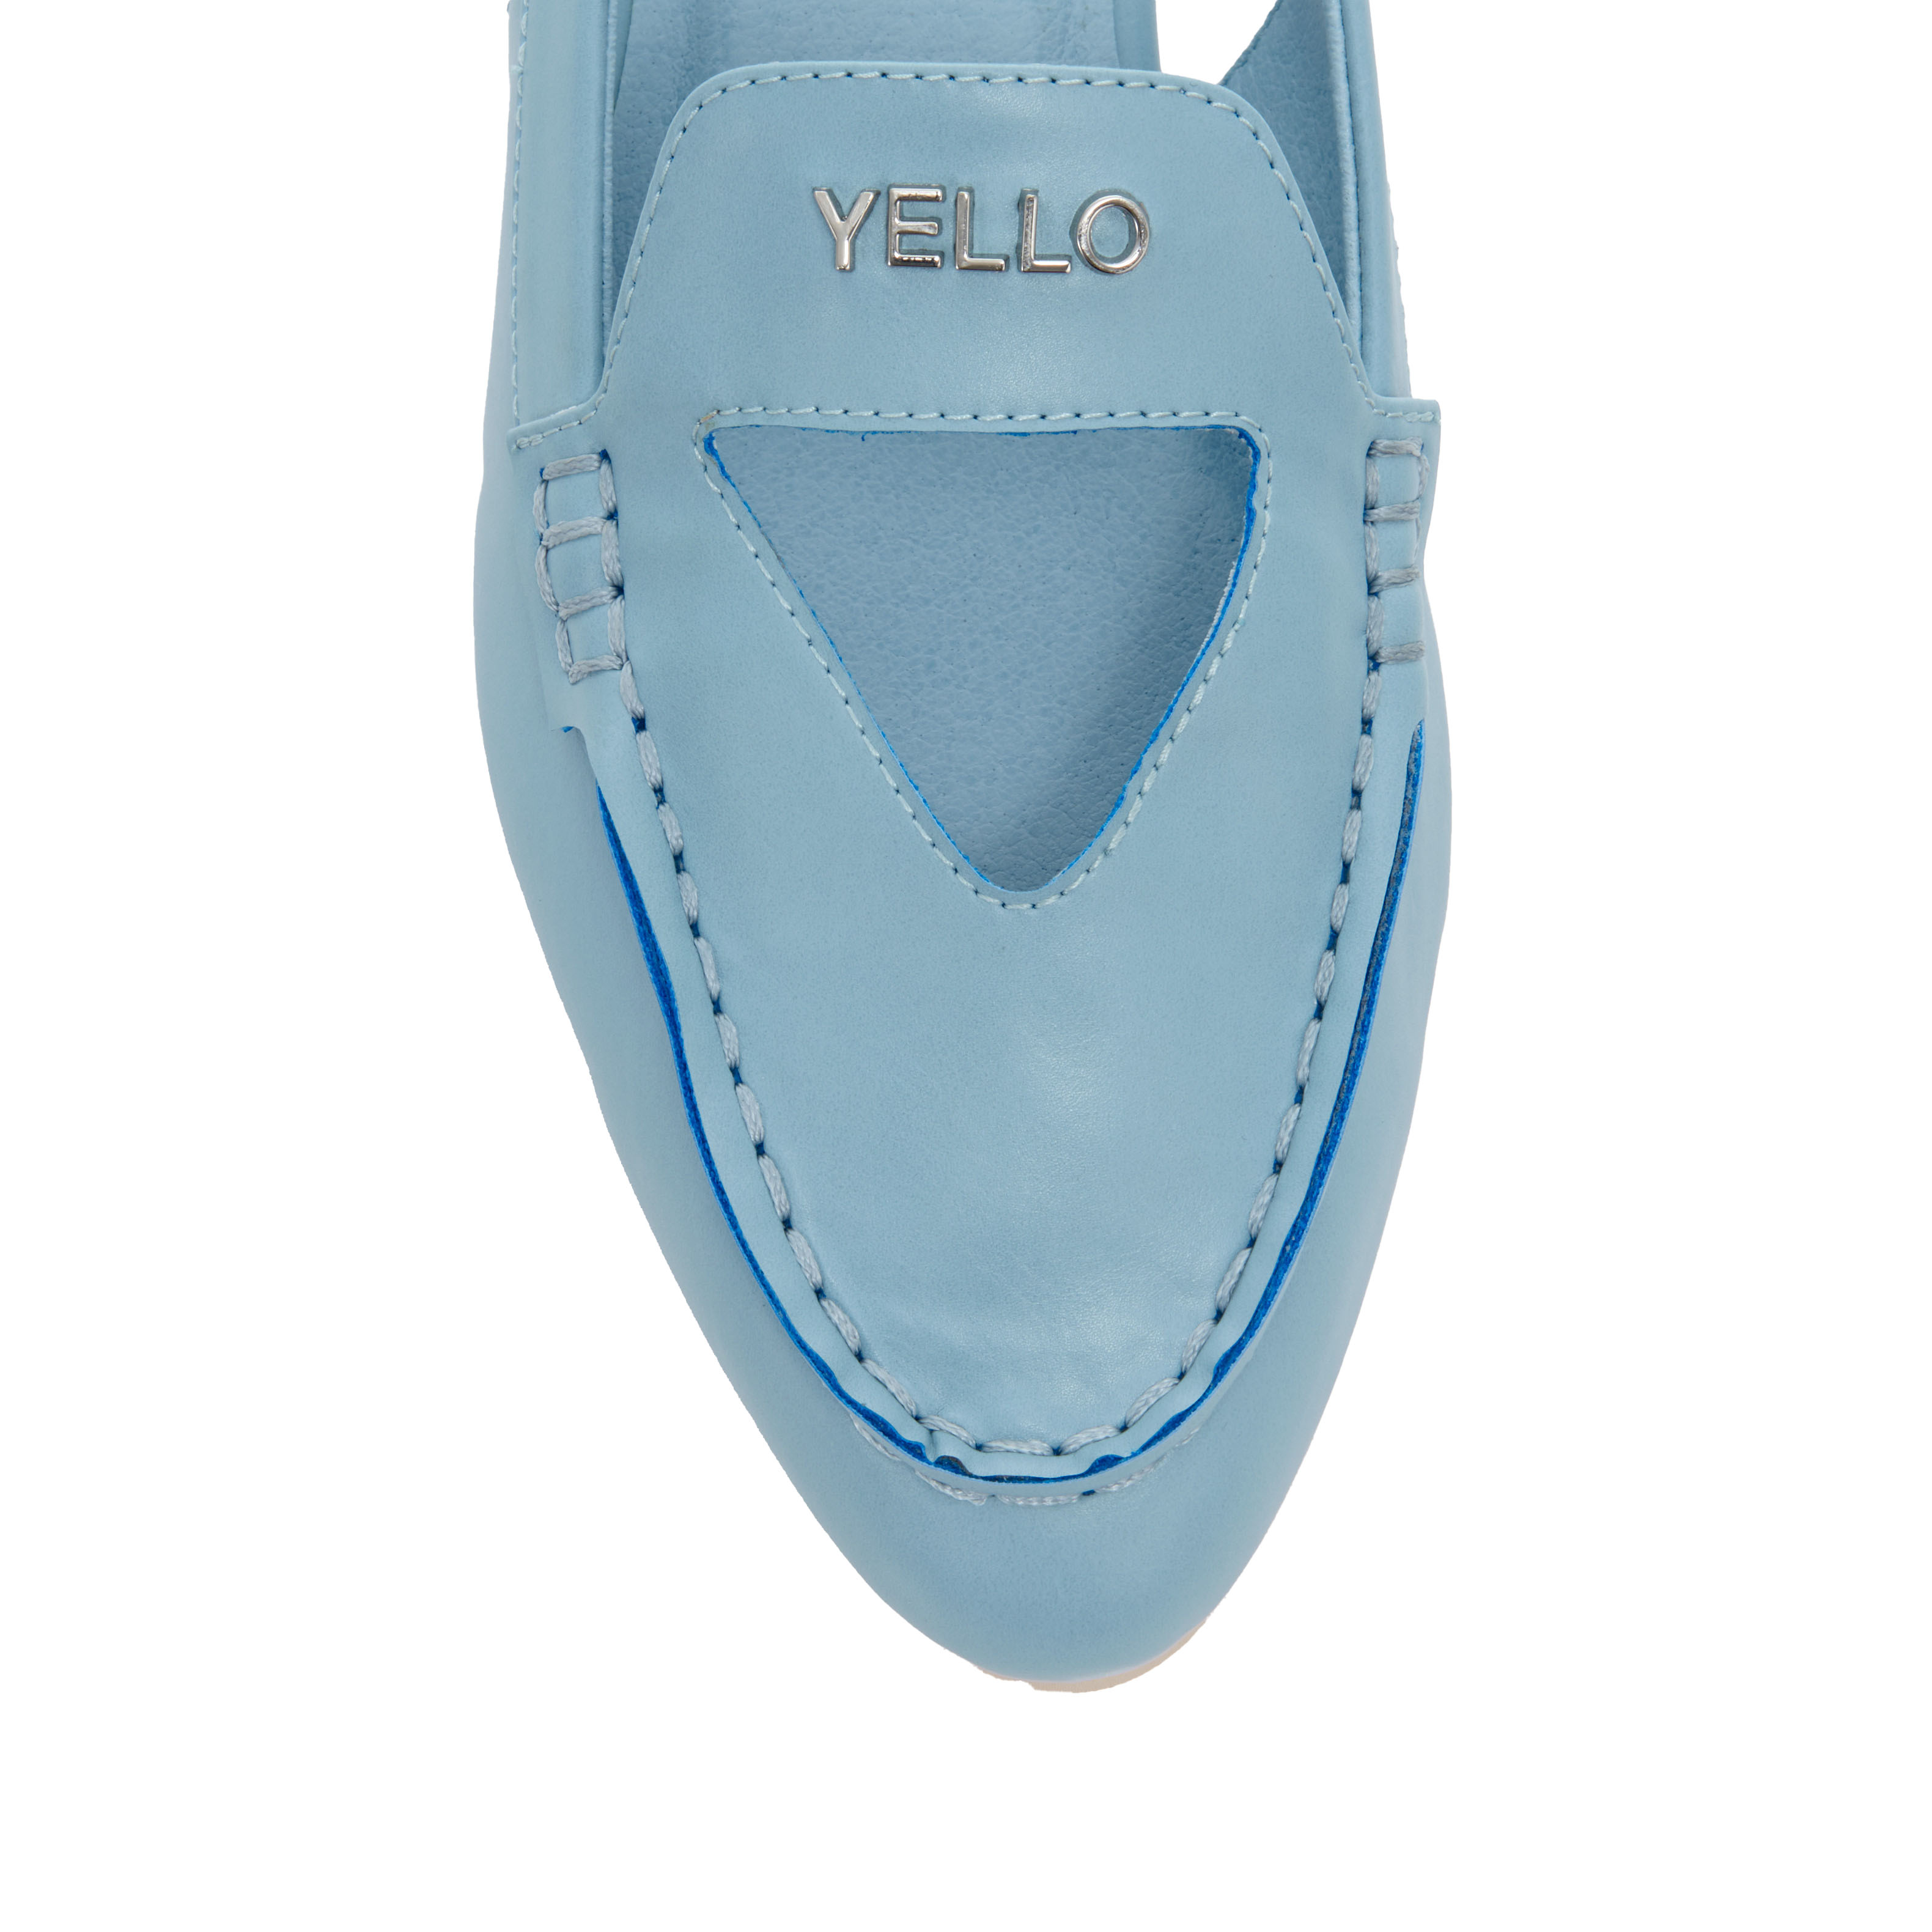 yello shoes